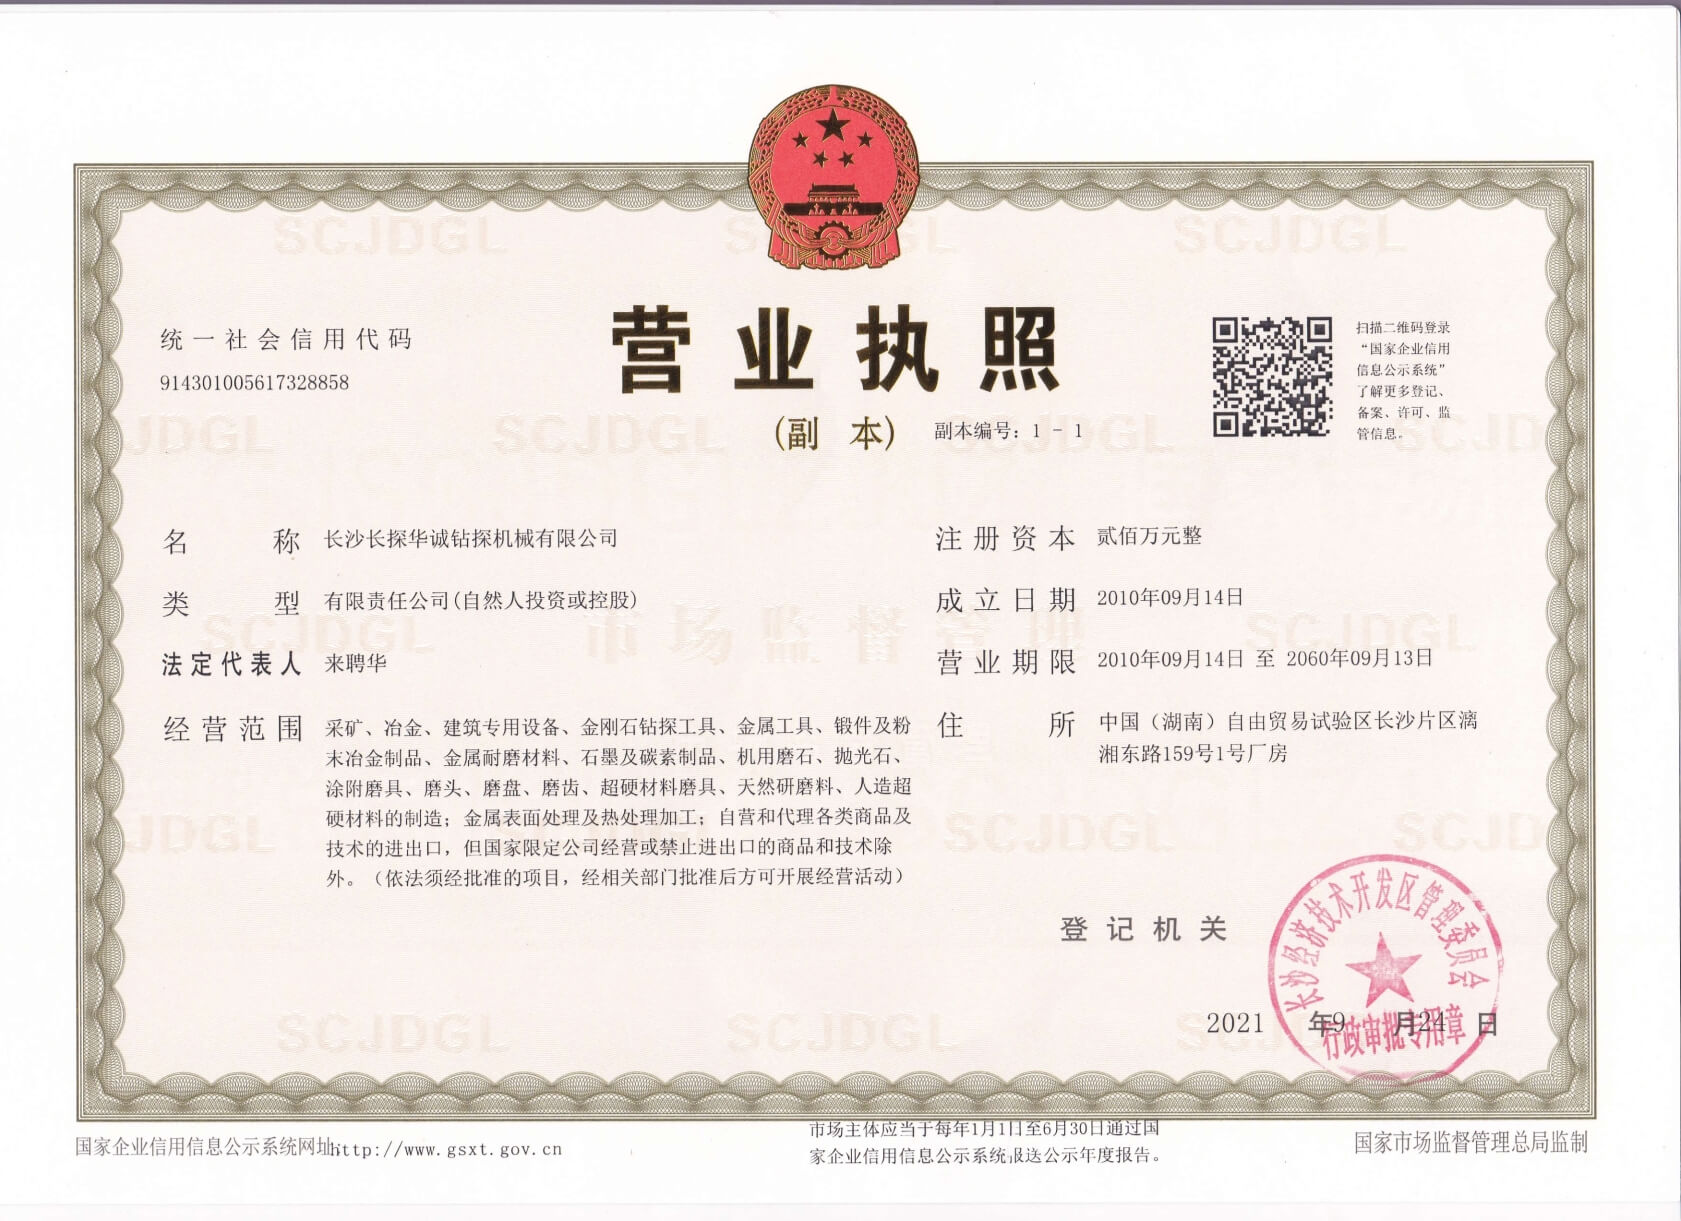 Certificate – Impregnated diamond core bit